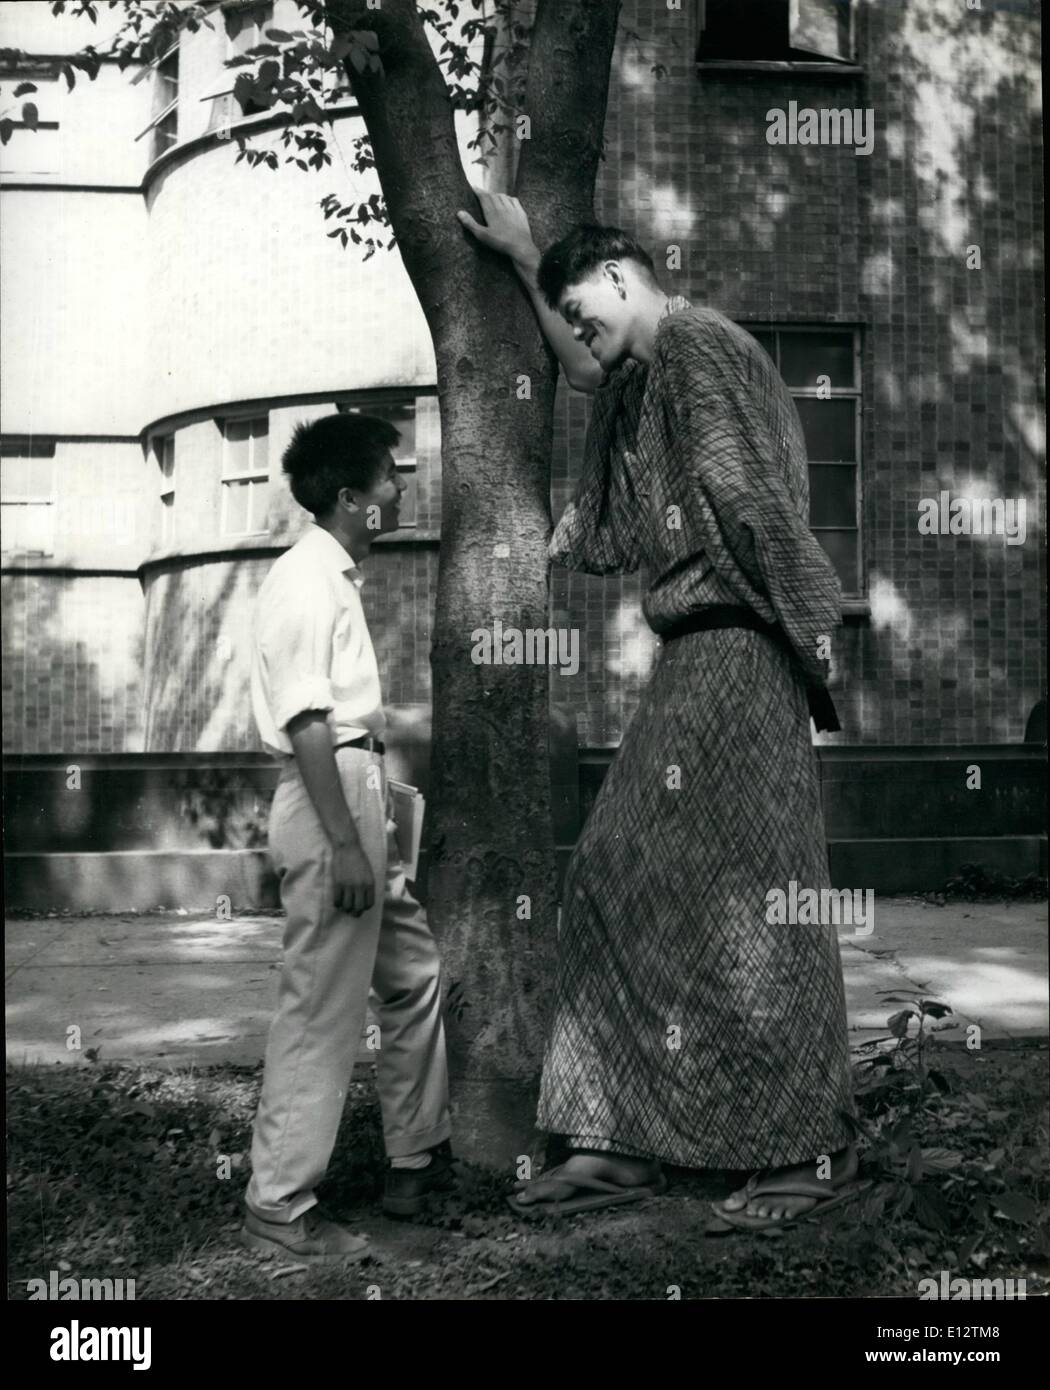 Febbraio 24, 2012 - Il gigante Yoshimitsu colloqui con un normale dimensione uomo giapponese nella motivazione dell'ospedale. Foto Stock